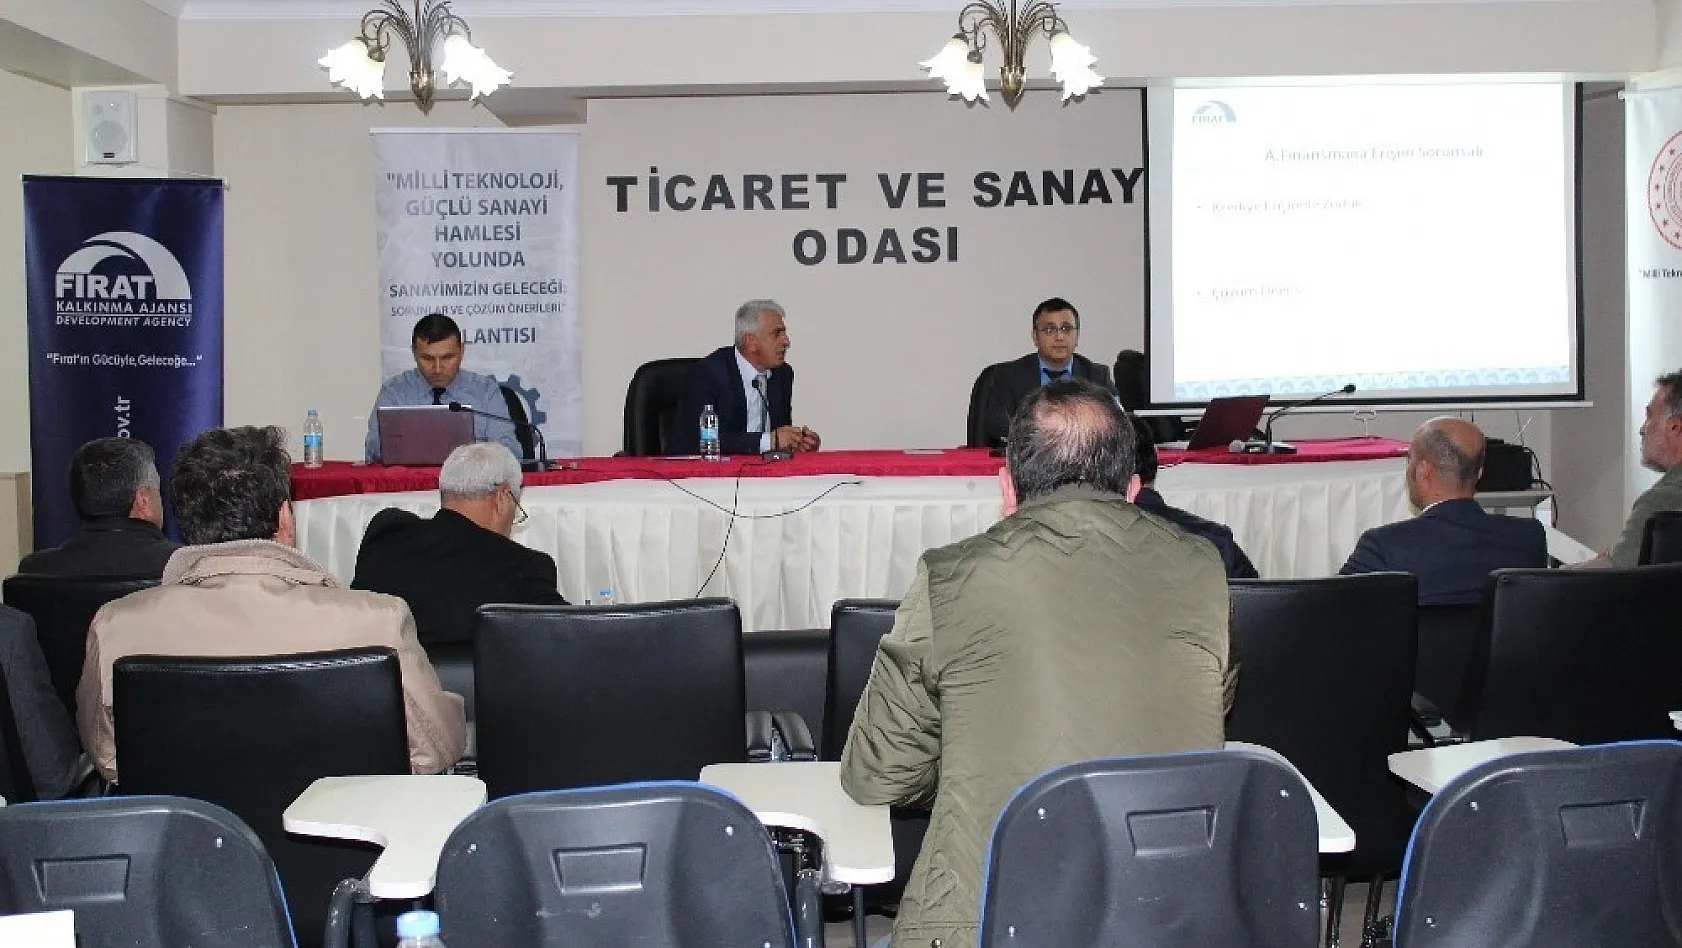 Tunceli'de 'Milli Teknoloji, Güçlü Sanayi Hamlesi' toplantısı 